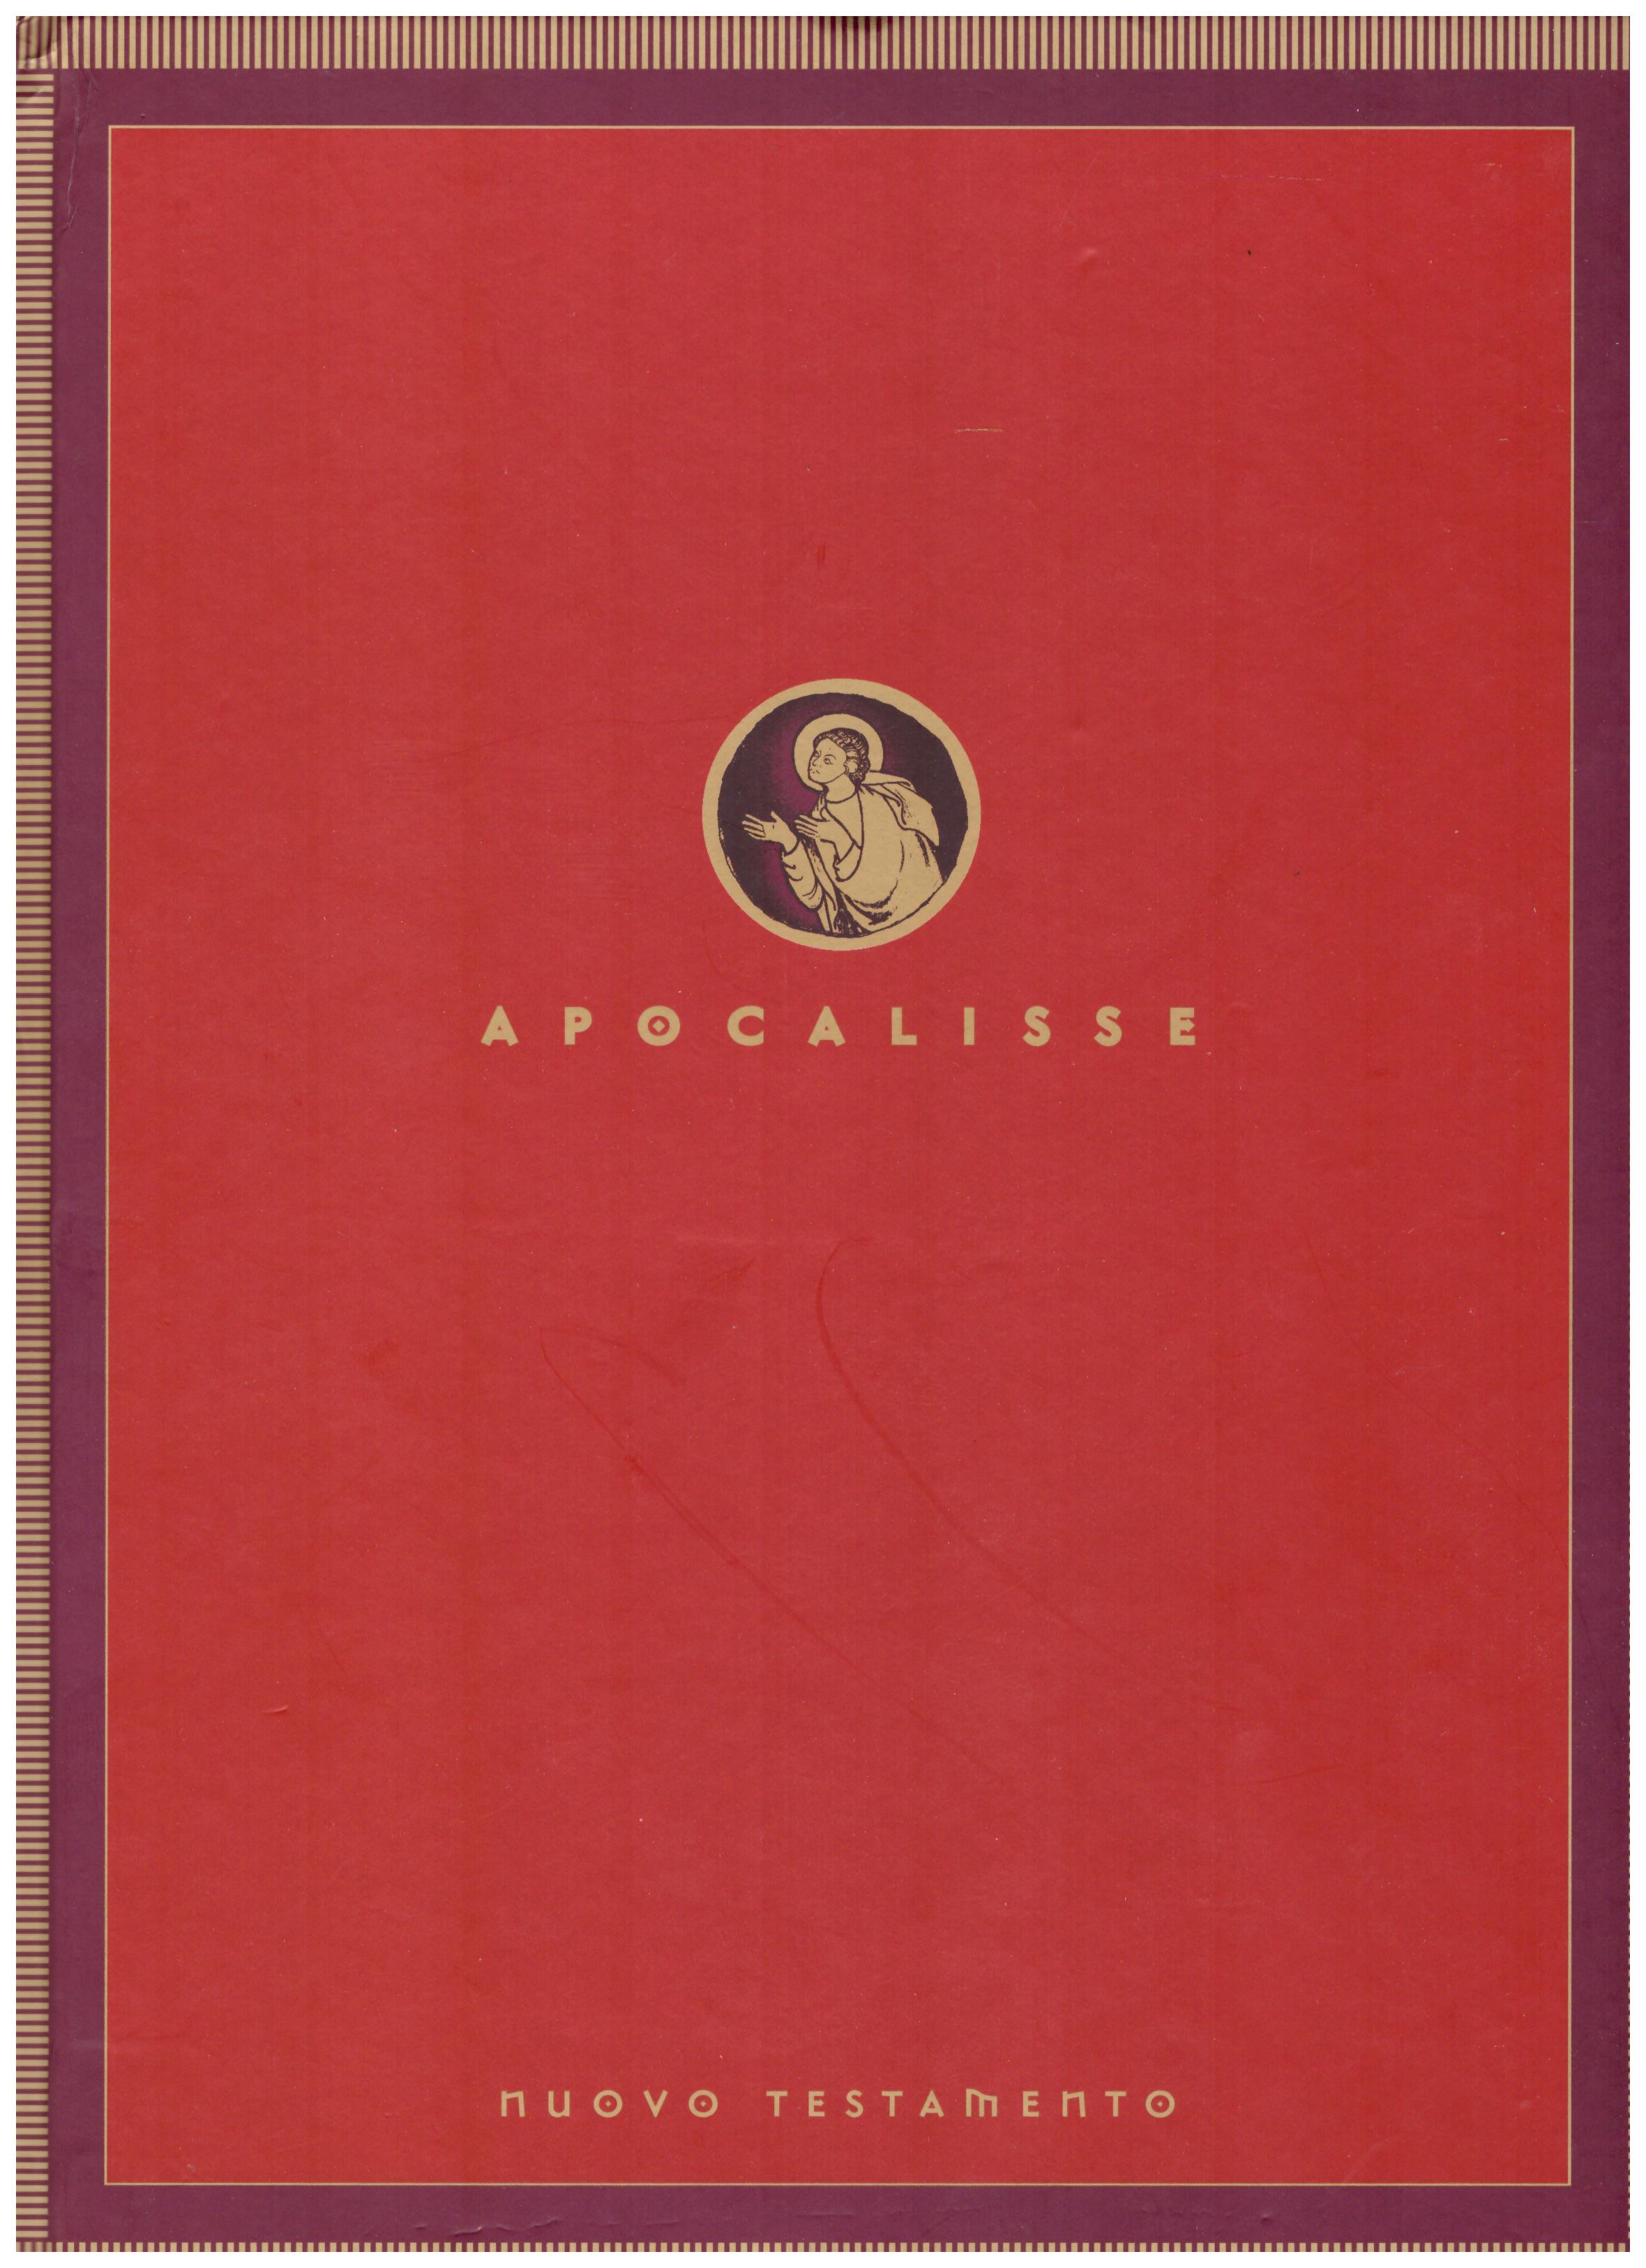 Titolo: Nuovo Testamento, Apocalisse Autore : AA.VV.  Editore: Famiglia cristiana 2003